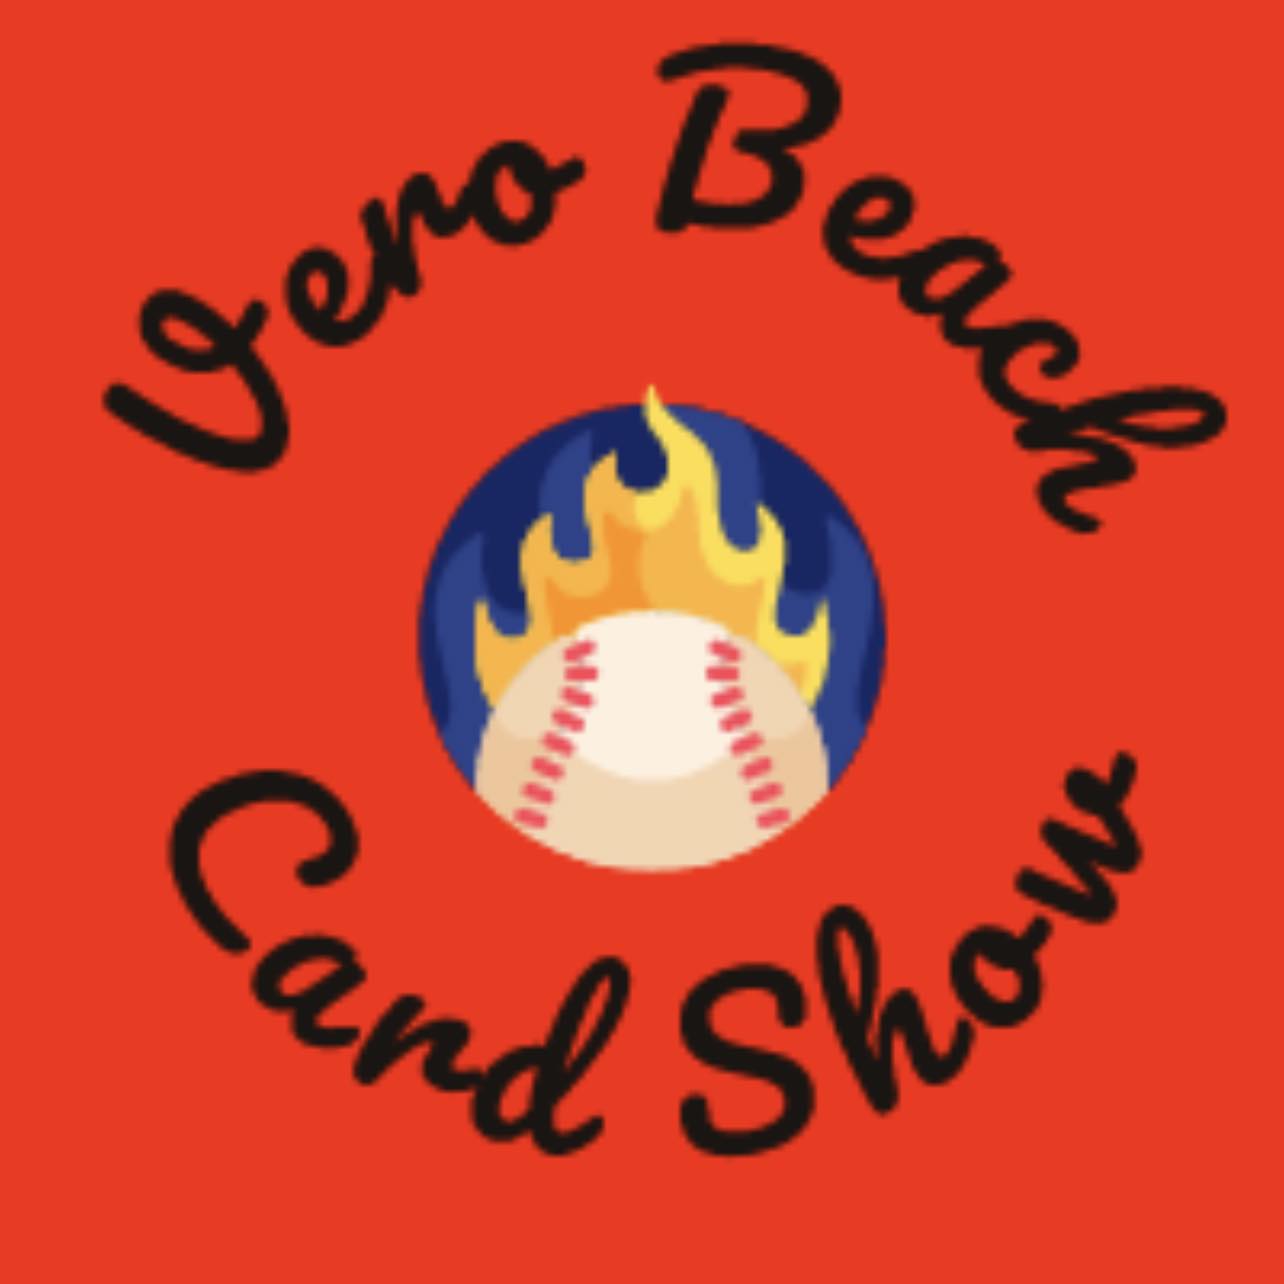 Vero Beach Card Show - Vero Beach